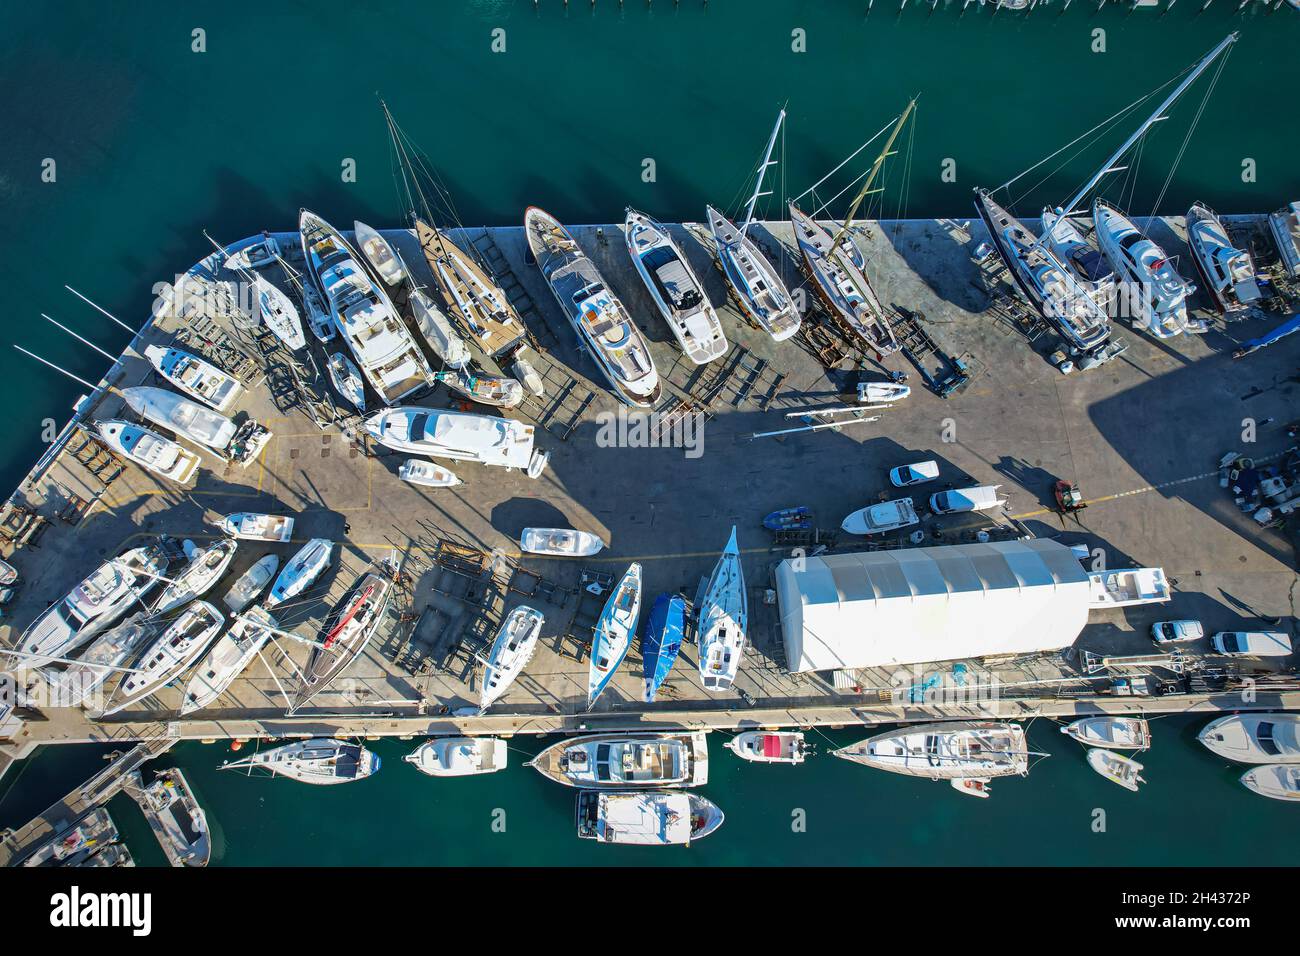 Luftaufnahme der Marina Docks mit Booten, die dort festgemacht sind. Rimini, Italien - Oktober 2021 Stockfoto